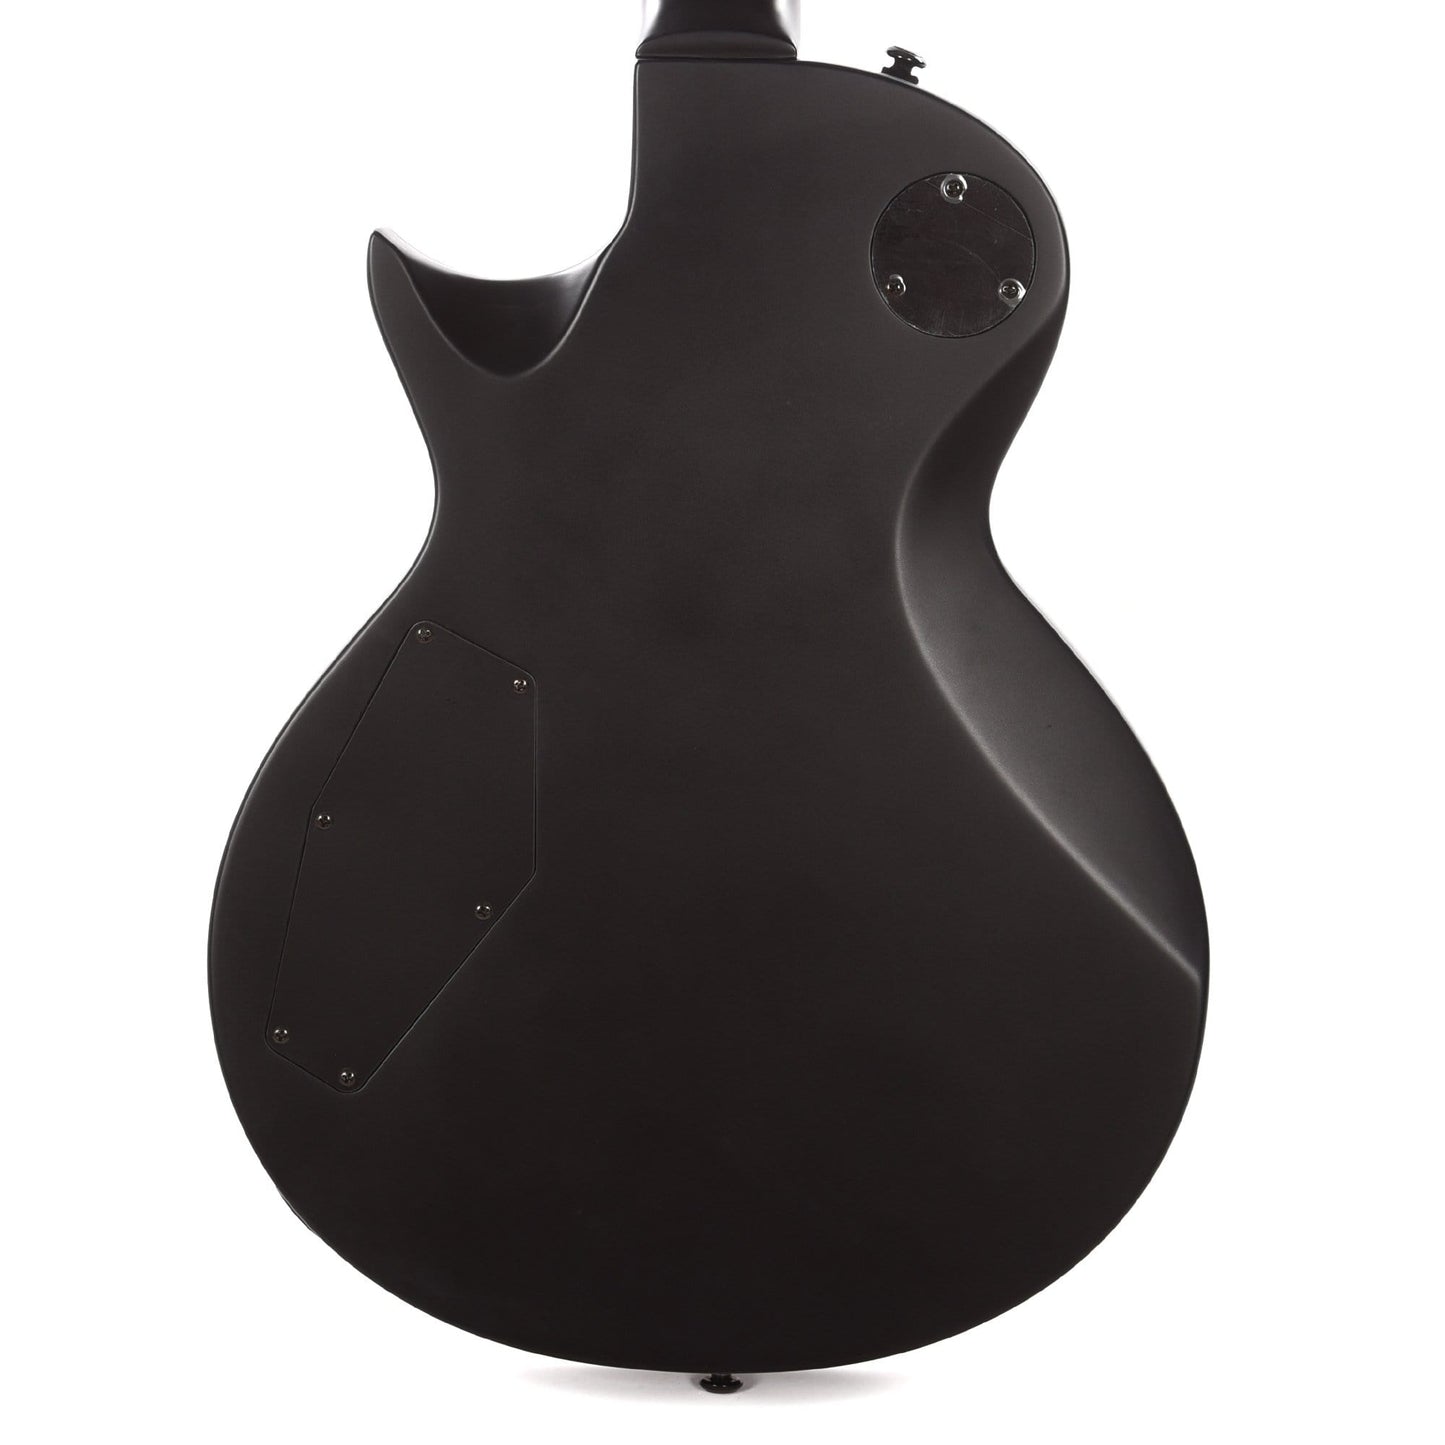 ESP LTD EC-256 Black Satin Electric Guitars / Solid Body